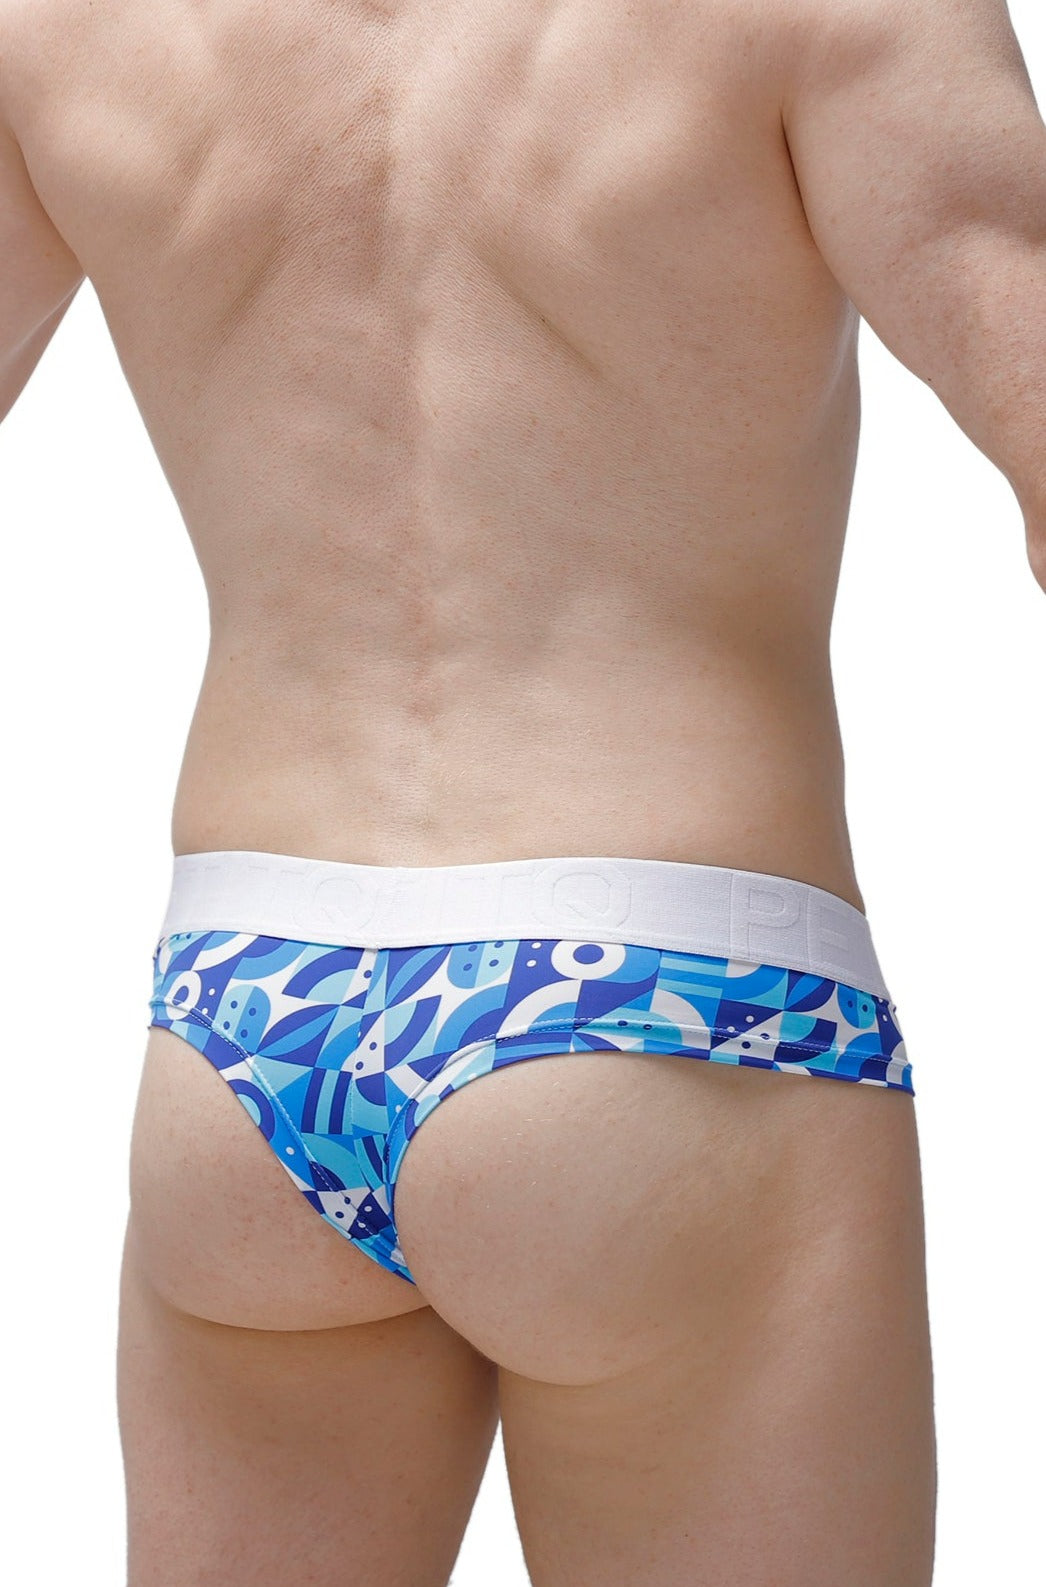 Cheeky Brief Banyuls – PetitQ Underwear, Men's Sexy Underwear by